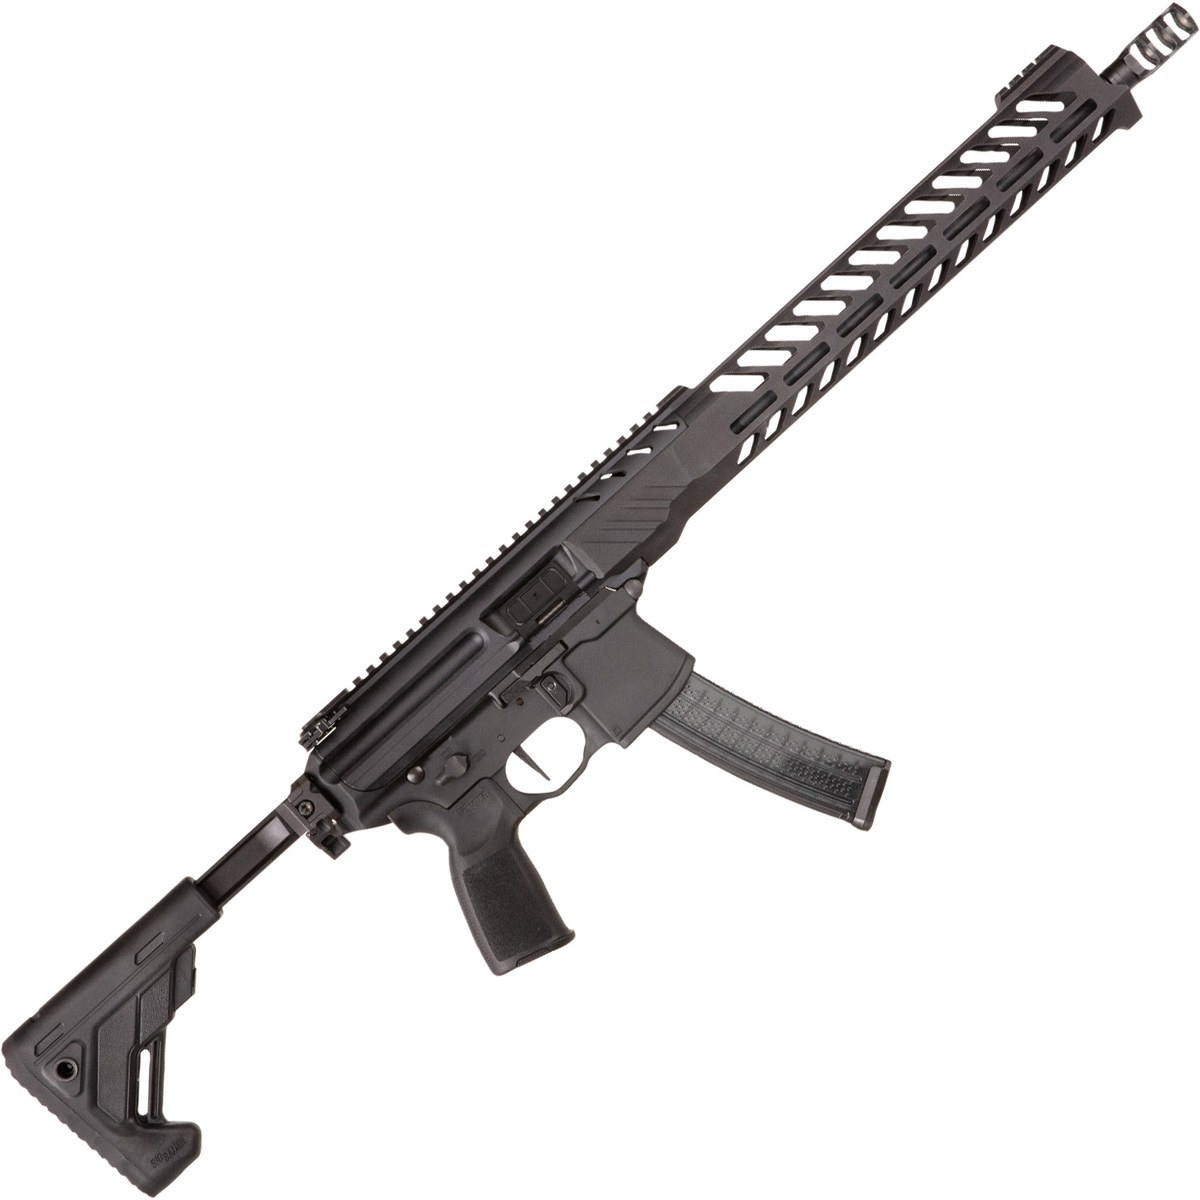 Sig Sauer Mpx Pcc 9mm Luger 16in Black Semi Automatic Rifle 301 Rounds 1533455 1 ?context=bWFzdGVyfGltYWdlc3wxMzY2MTV8aW1hZ2UvanBlZ3xpbWFnZXMvaGFkL2g1MC85MDA4NzMzODQ3NTgyLmpwZ3xjYTNlMjVlZjFiYzAxMDBkNDhlN2M3OTFkNmE2NTBjM2I2YzljZjNjNDc3YmQ2ODhiMGI1MDM2NDE4N2JhZTI2